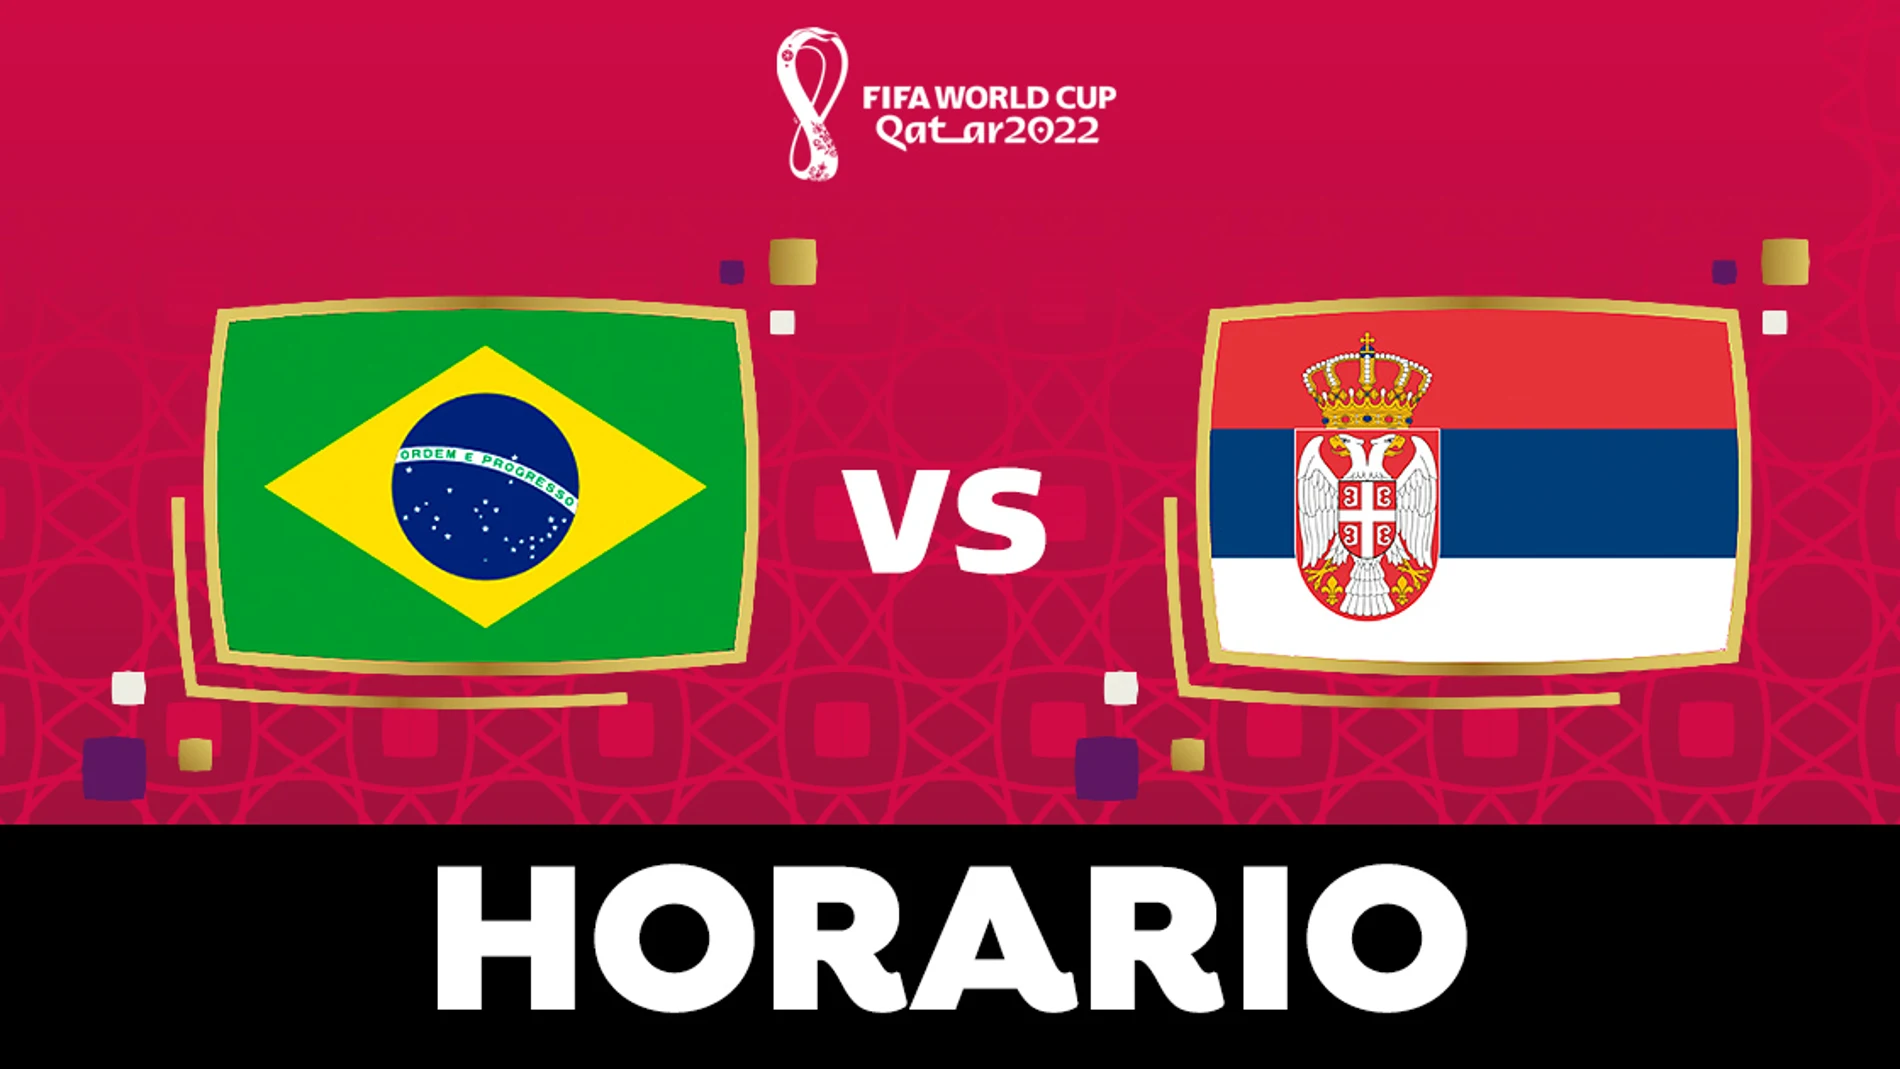 Brasil - Horario ver el partido del Mundial de Qatar en directo